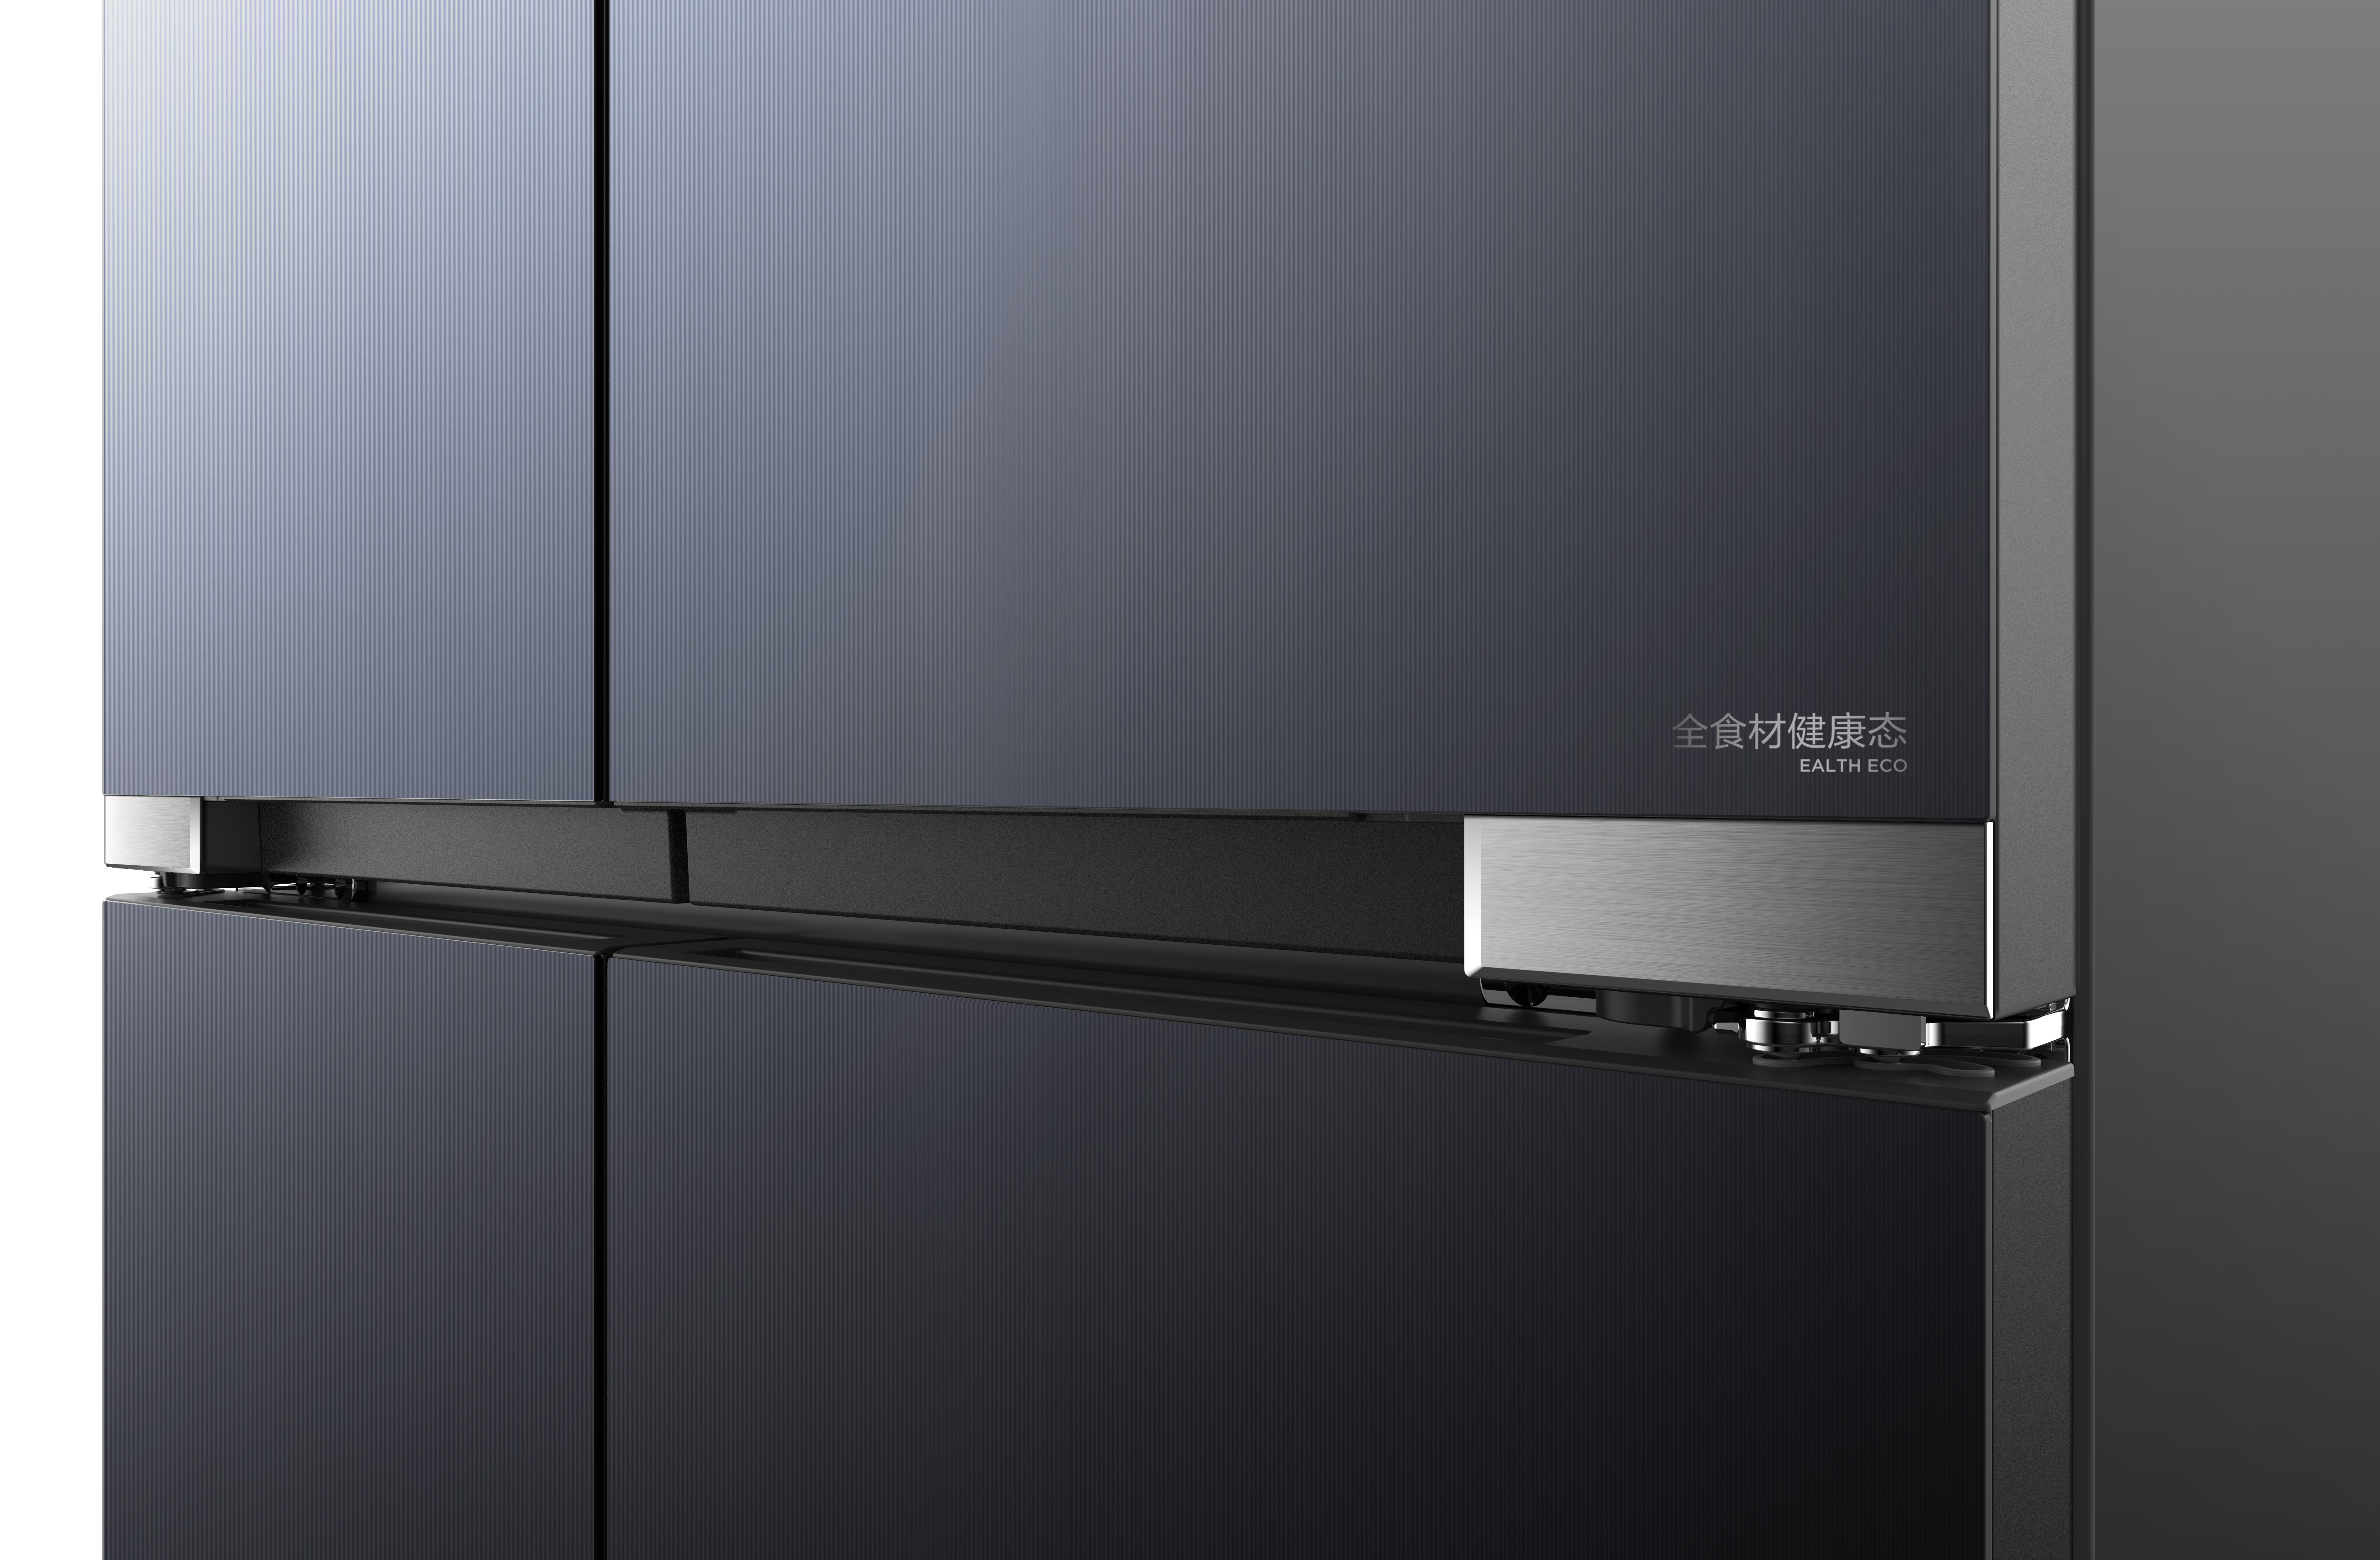 Midea Built-in V-tech fresh Series Refrigerator